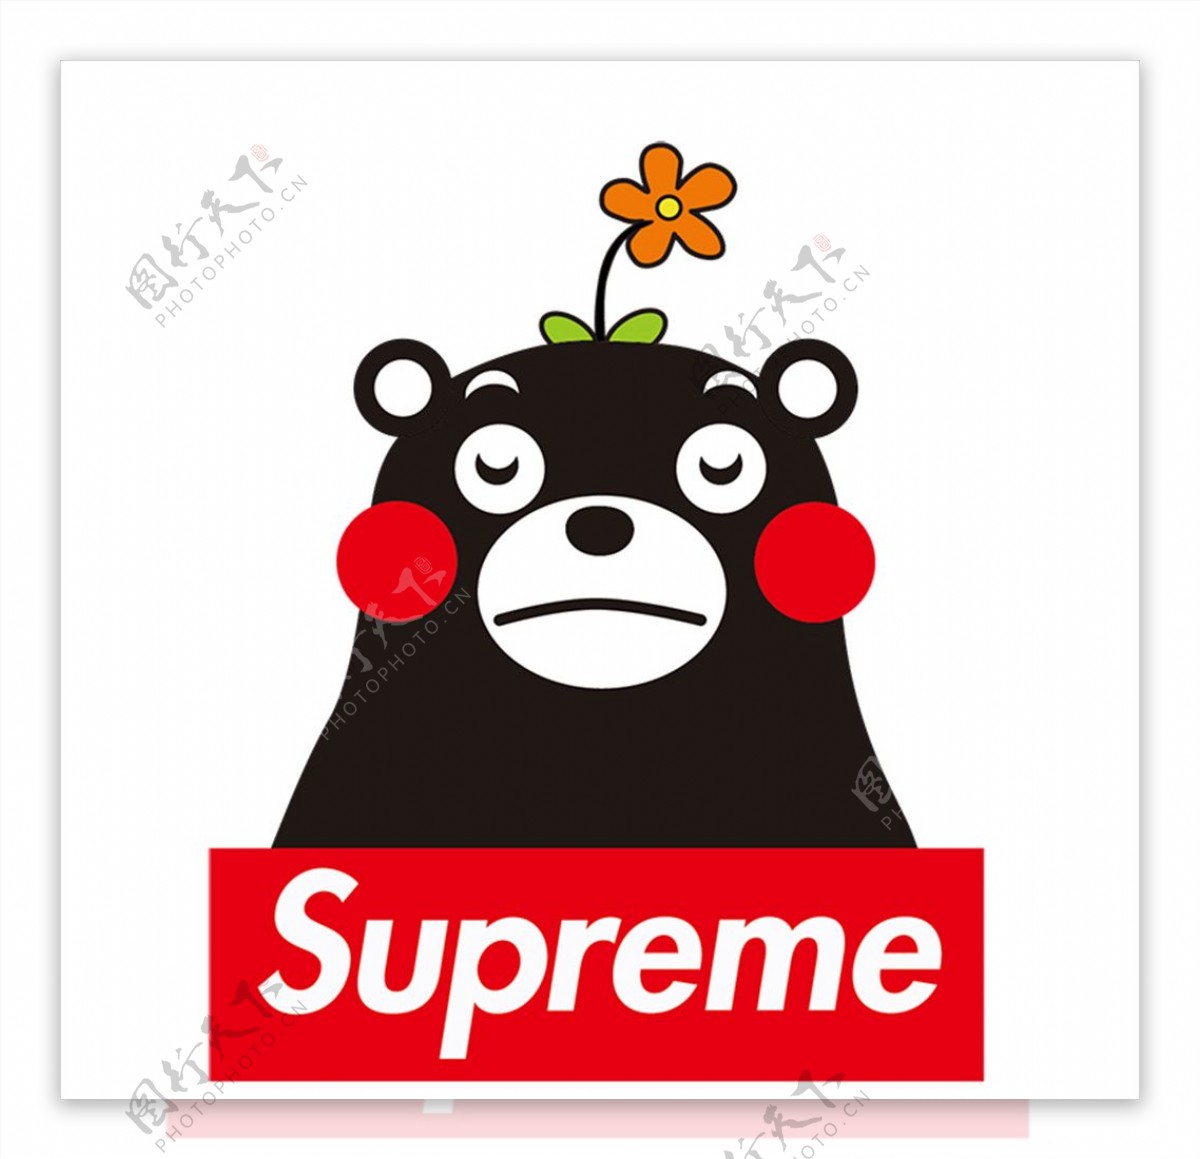 熊本supreme